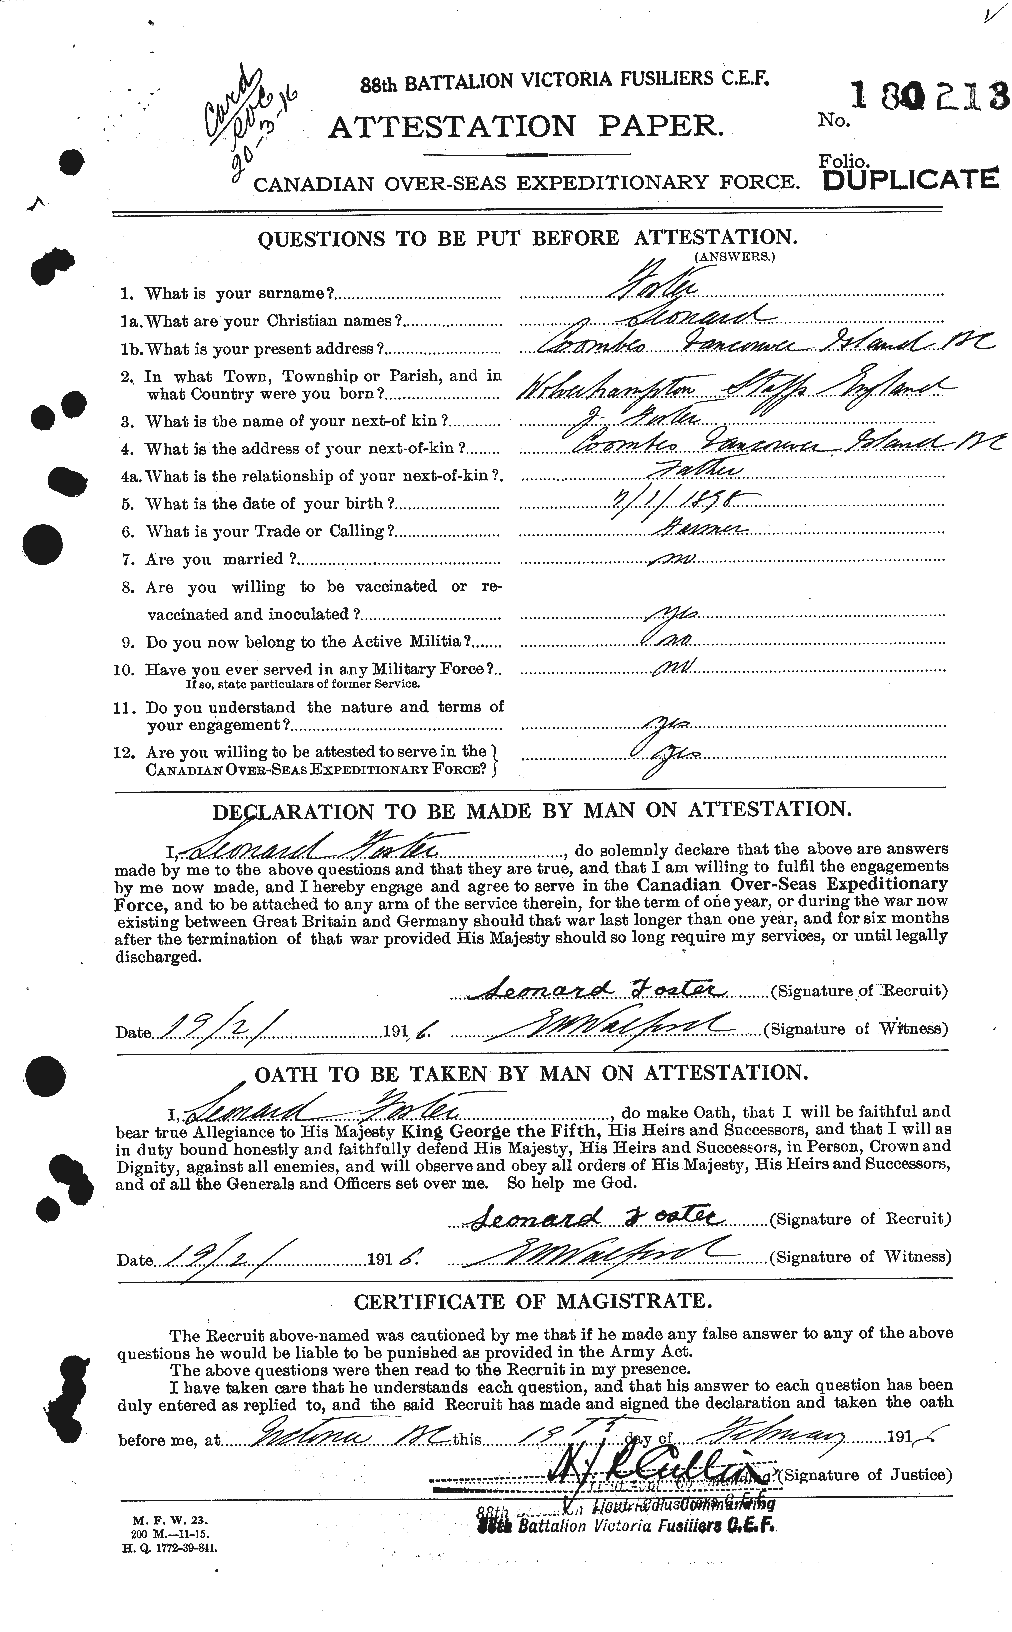 Dossiers du Personnel de la Première Guerre mondiale - CEC 333401a